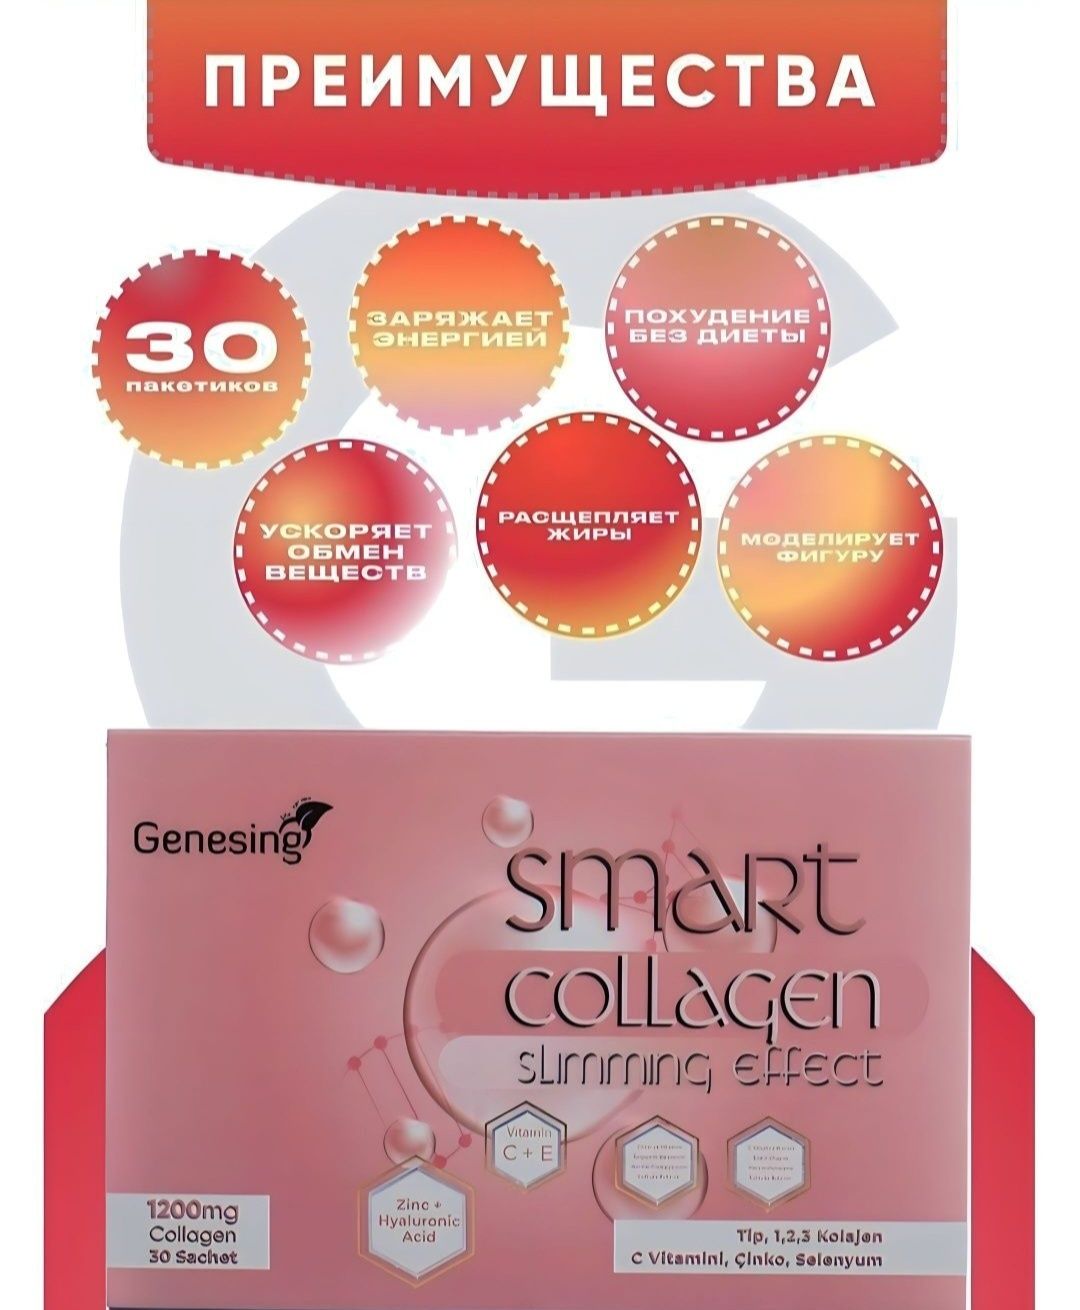 Smart Collagen/Slimming Effect/Умный коллаген/похудение/ногти/волосы